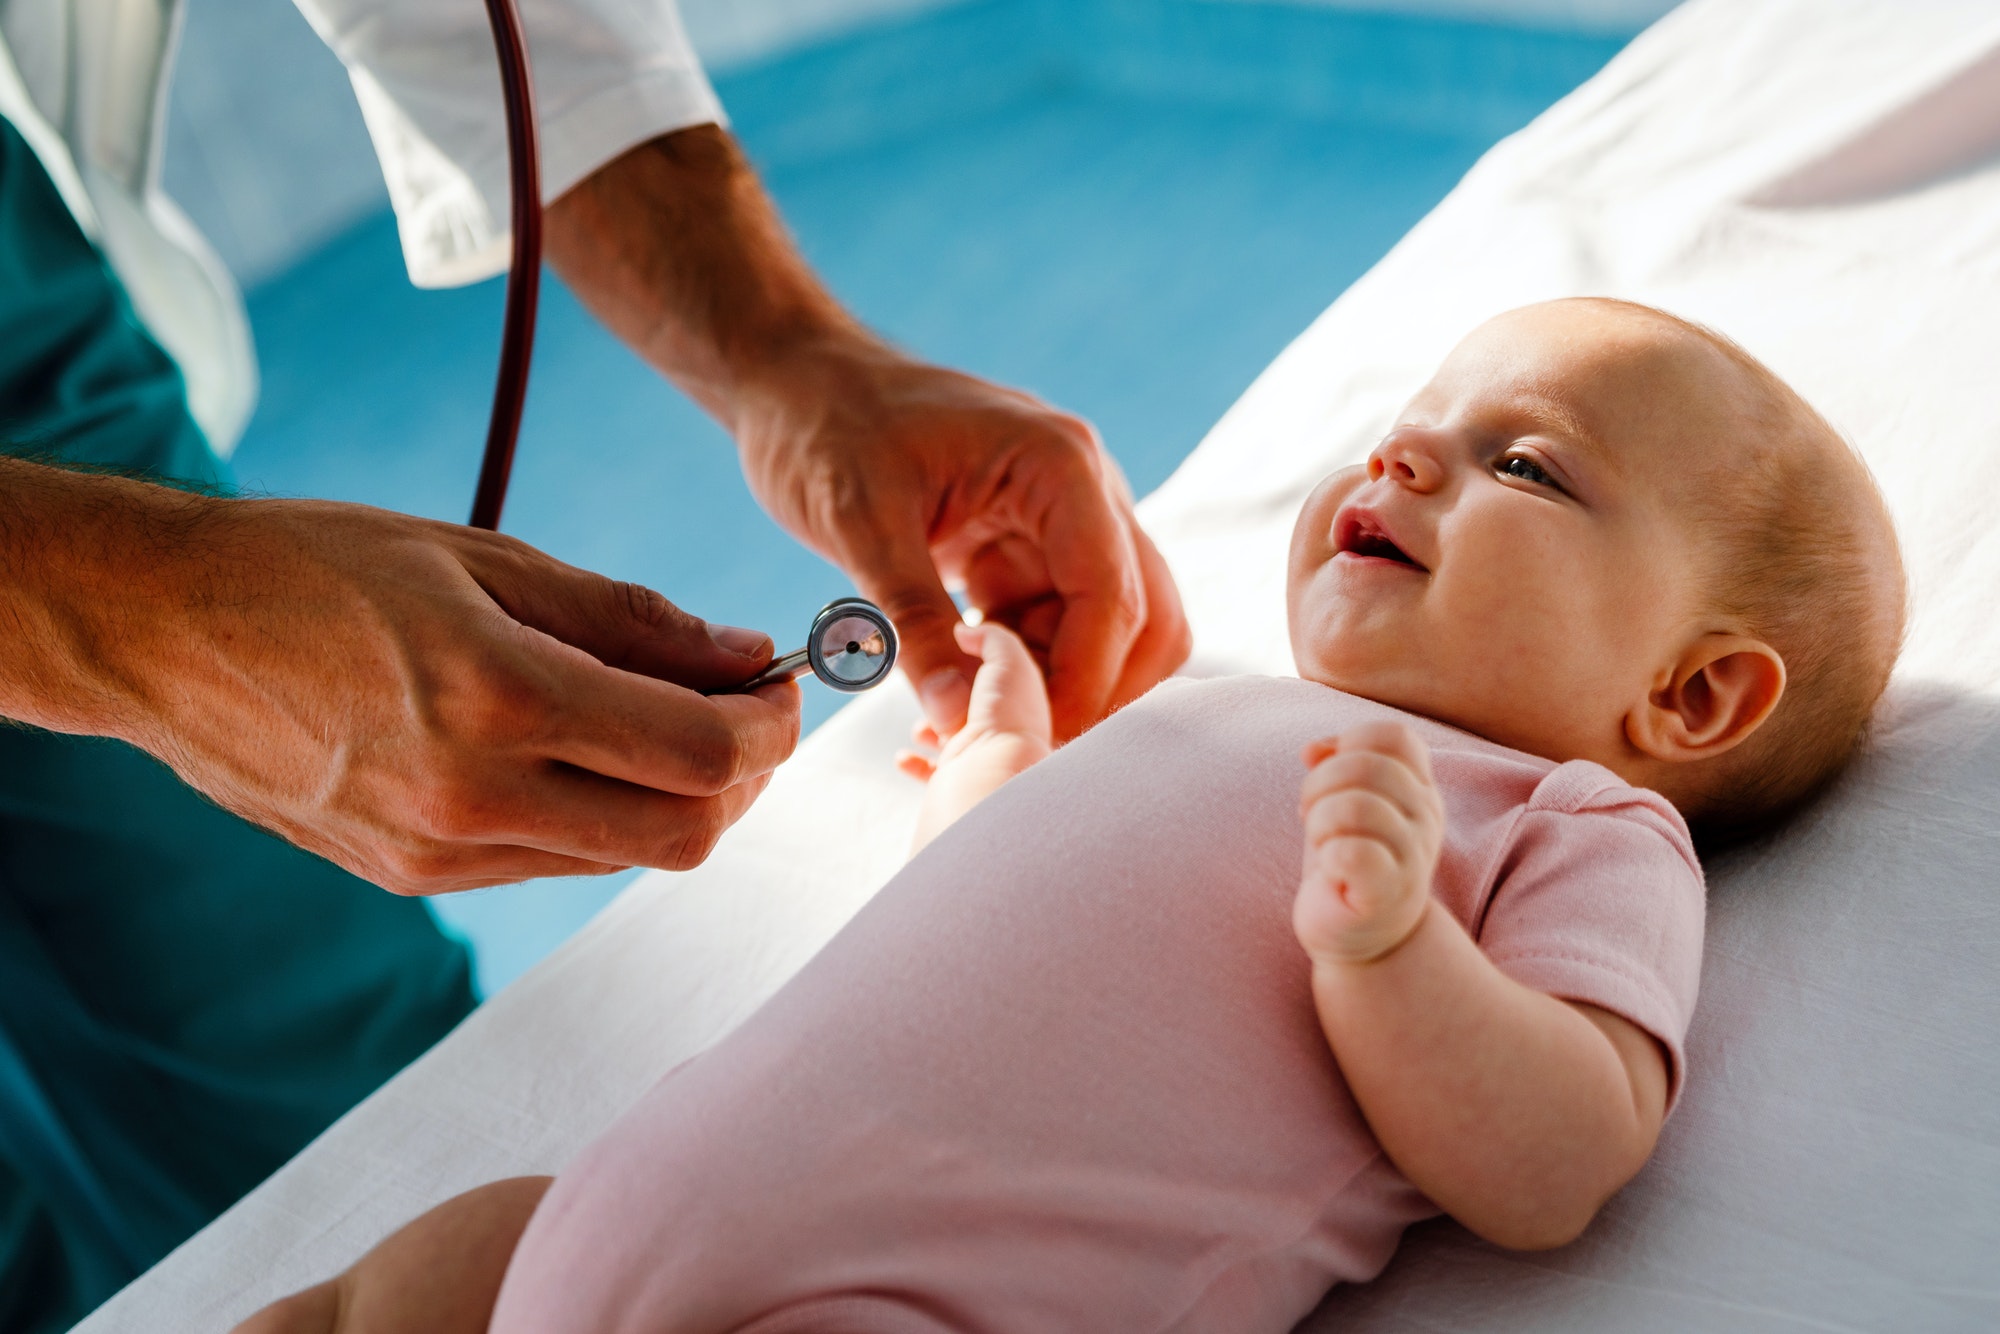 Pediatrician doctor examines baby. Healthcare, people, examination concept